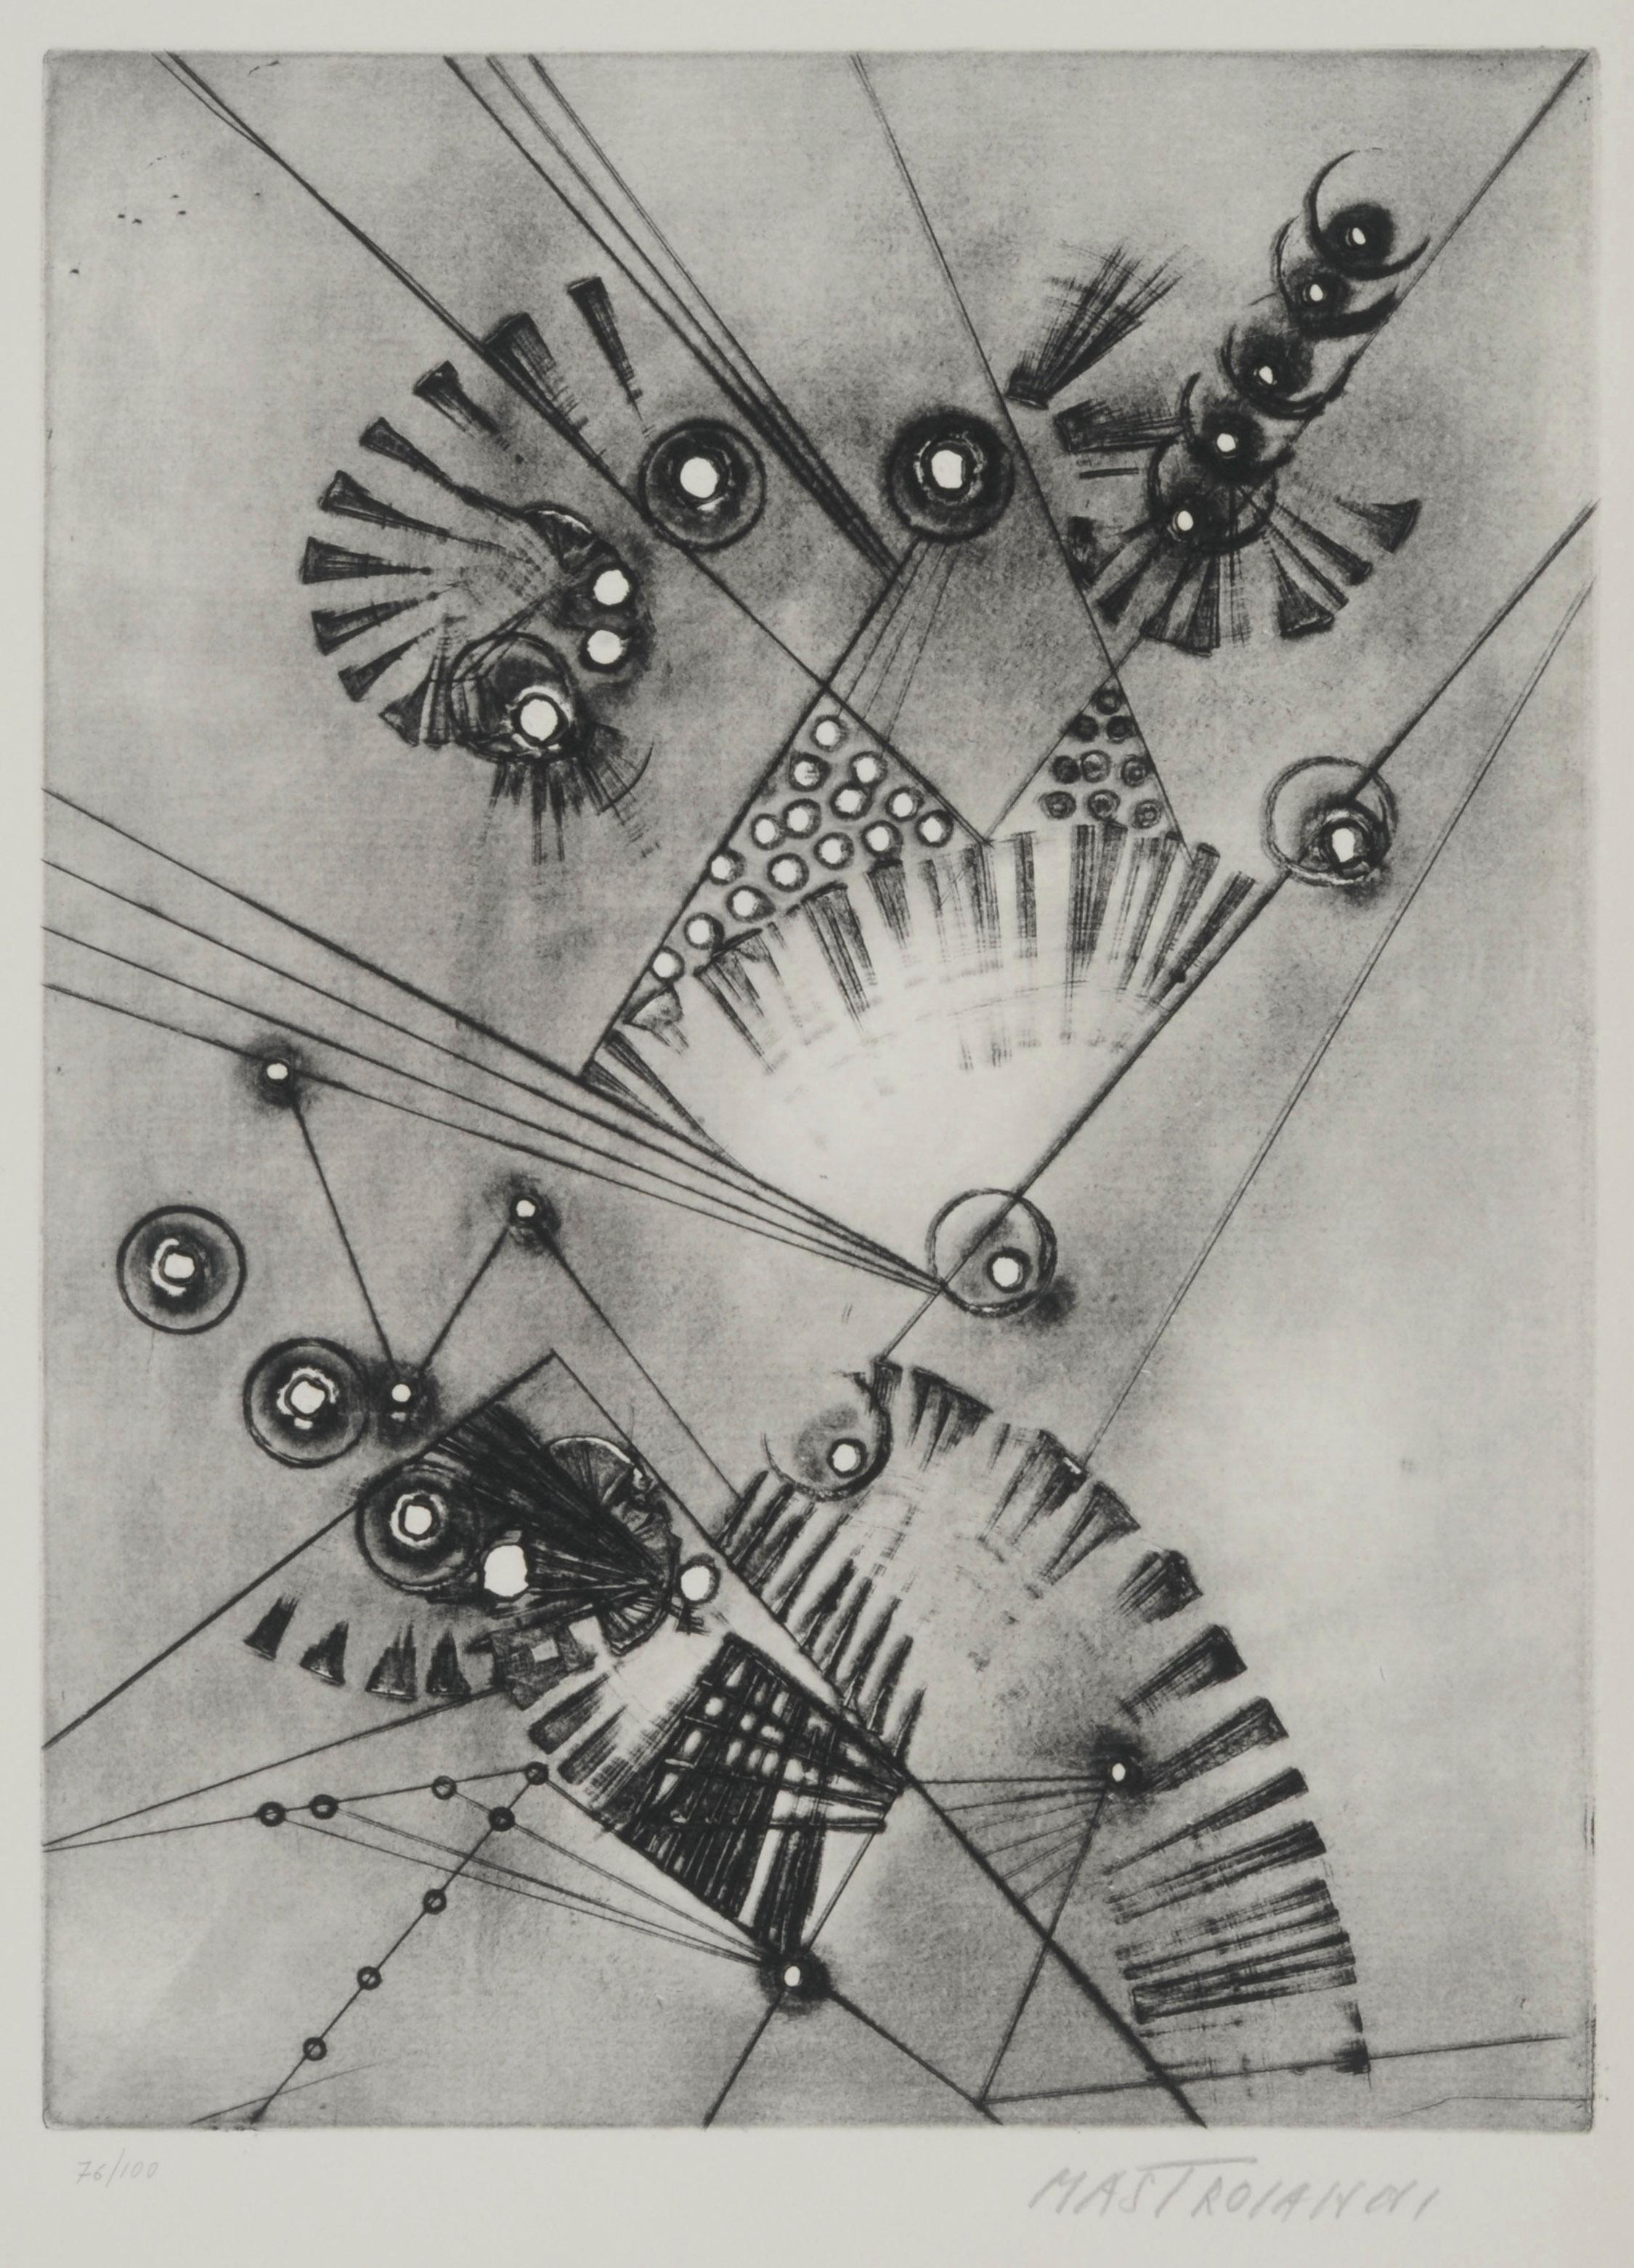 Umberto Mastroianni Abstract Print – Zusammensetzung